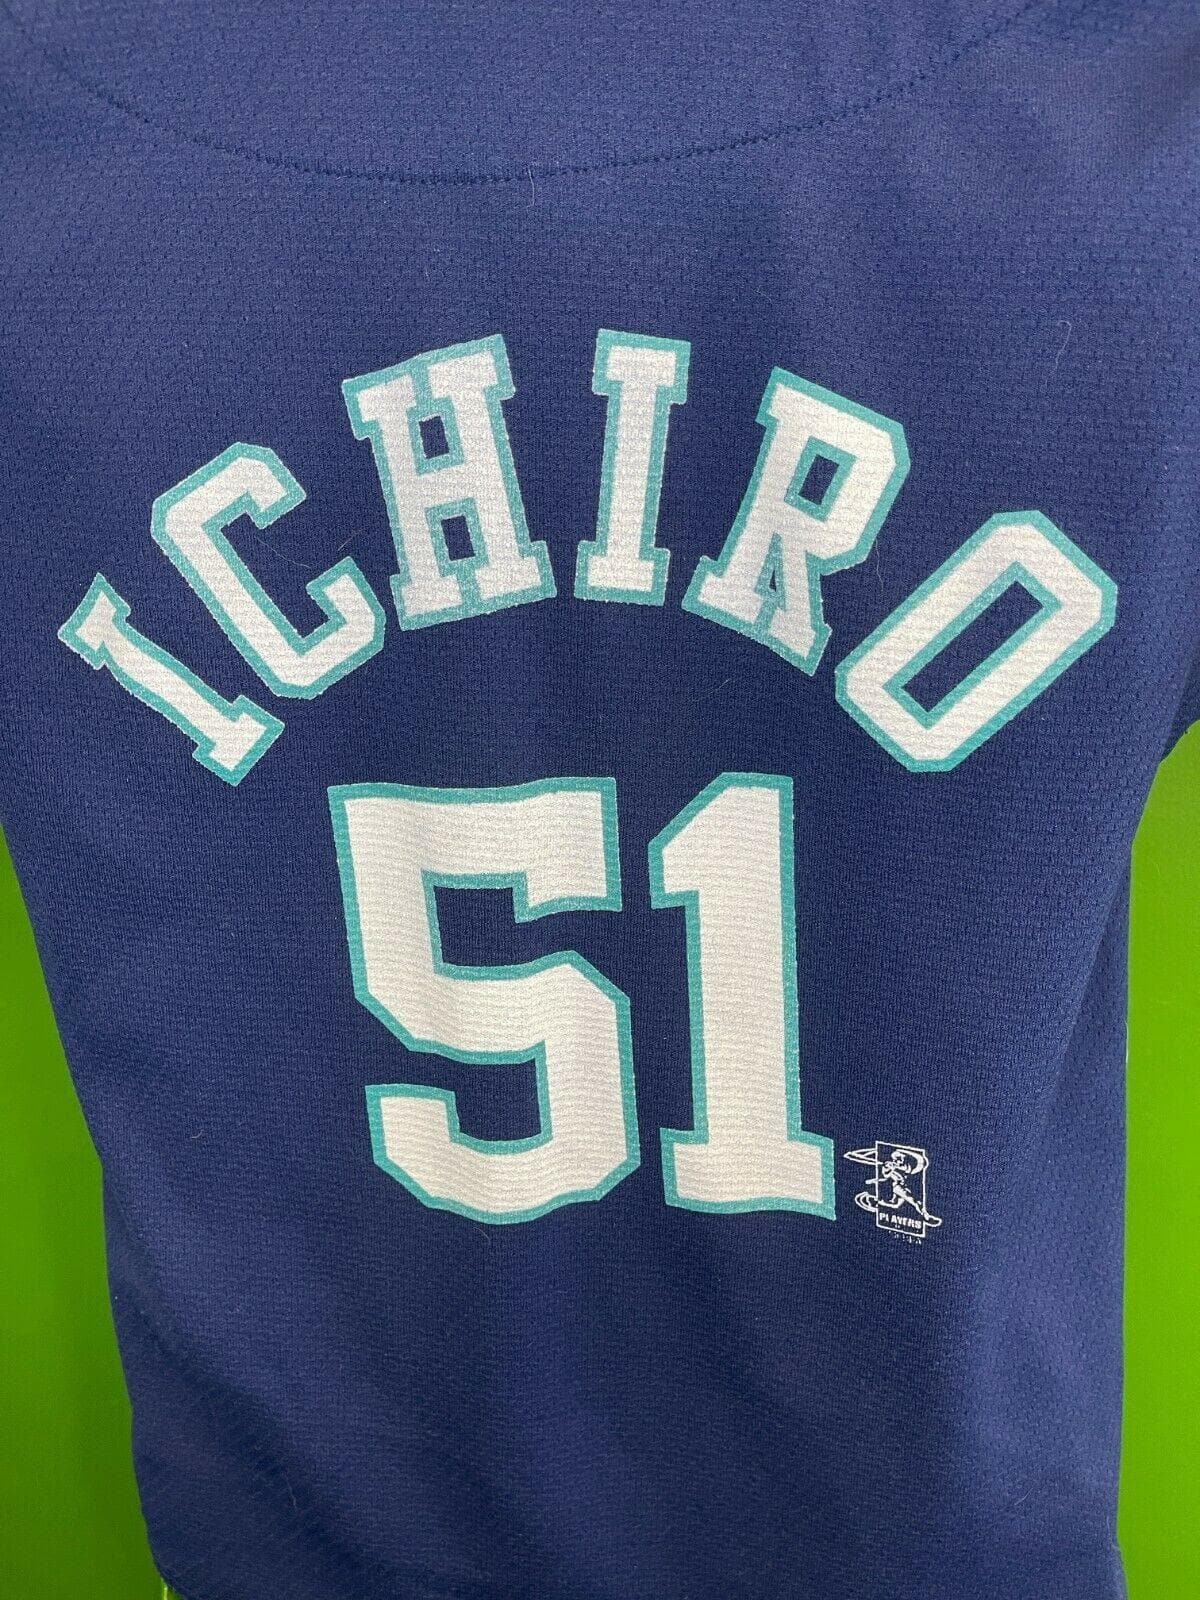 MLB Seattle Mariners Ichiro Suzuki #51 Blue Jersey Youth Medium 10-12